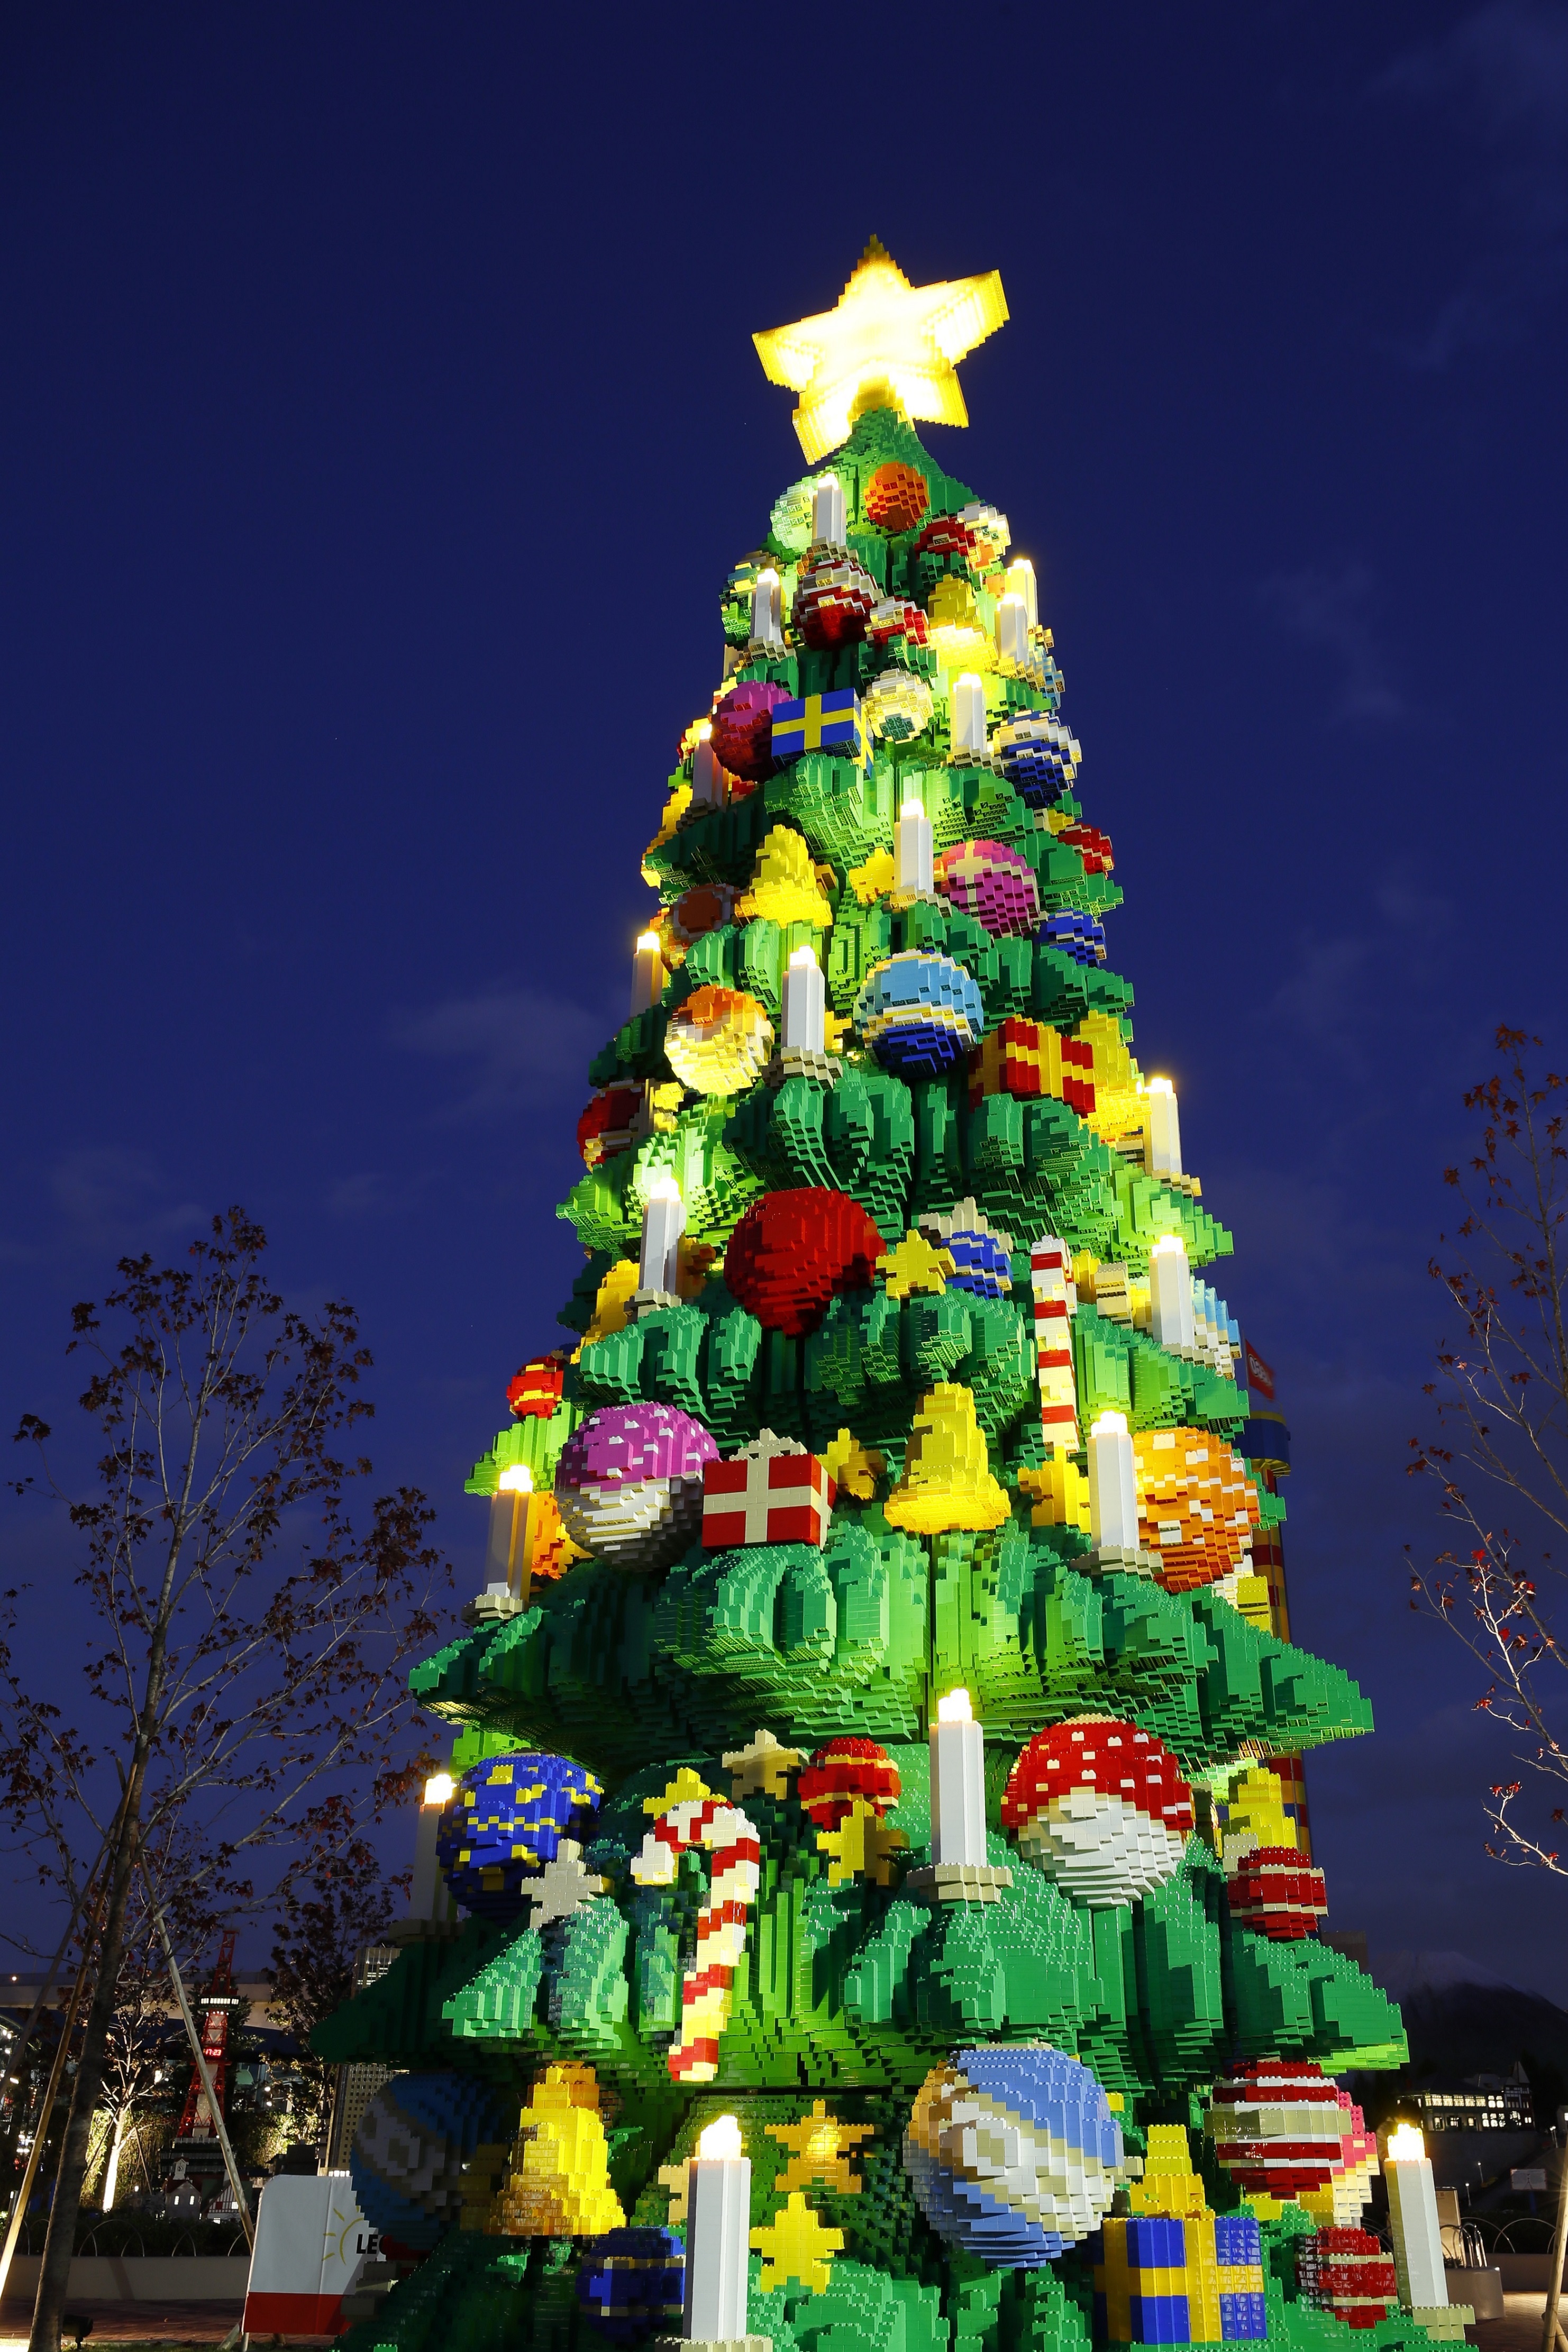 レゴブロックでできた巨大クリスマスツリーがお出迎え クリスマスイベント Bricxmas 本日よりスタート Newscast